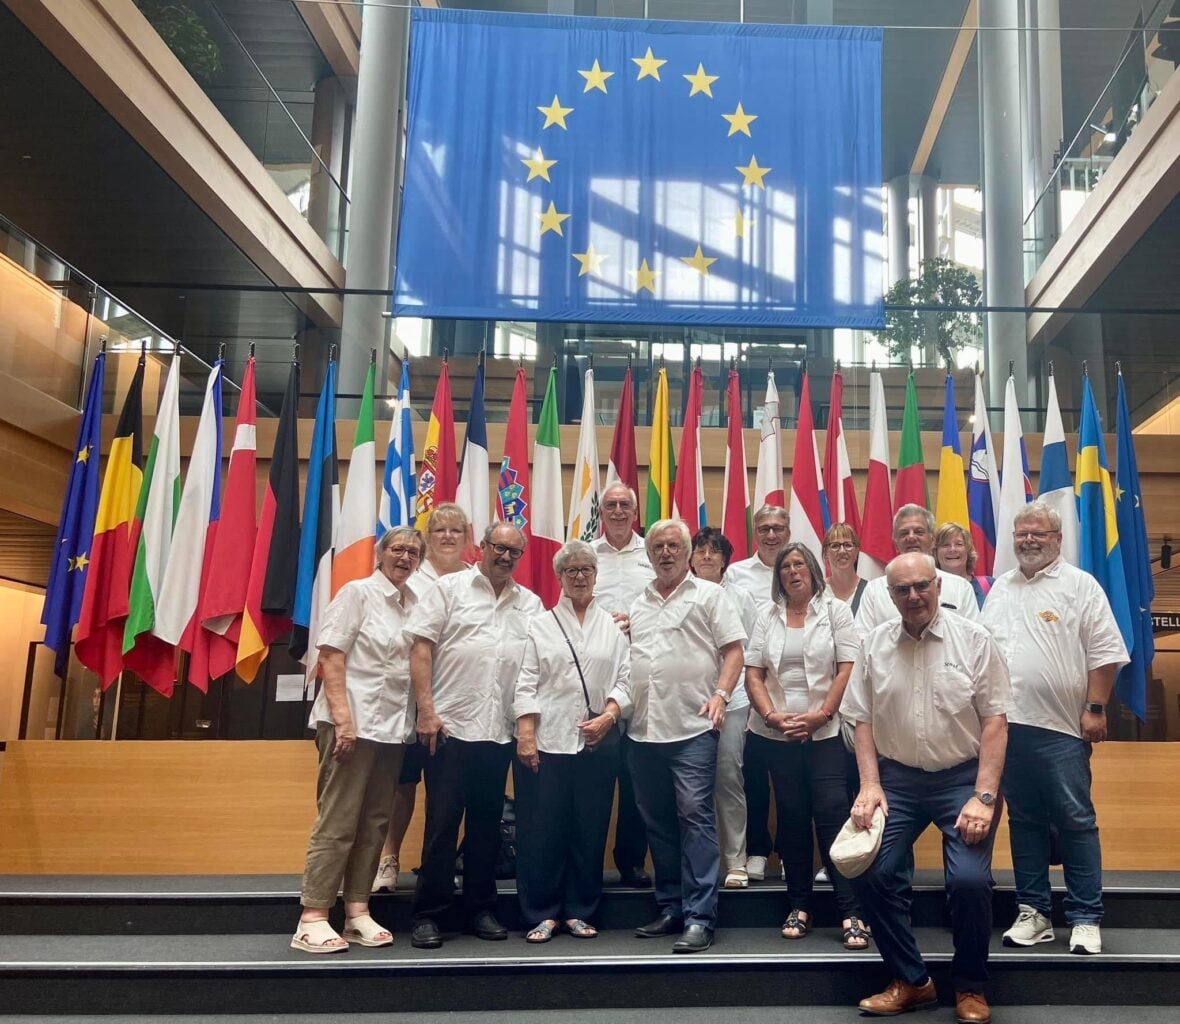 Eine Gruppe von Menschen posiert vor EU-Flaggen, die die Europastadt Straßburg repräsentieren, und umarmt den Senat, umgeben von einem bezaubernden blau-weißen Funke Wahn.